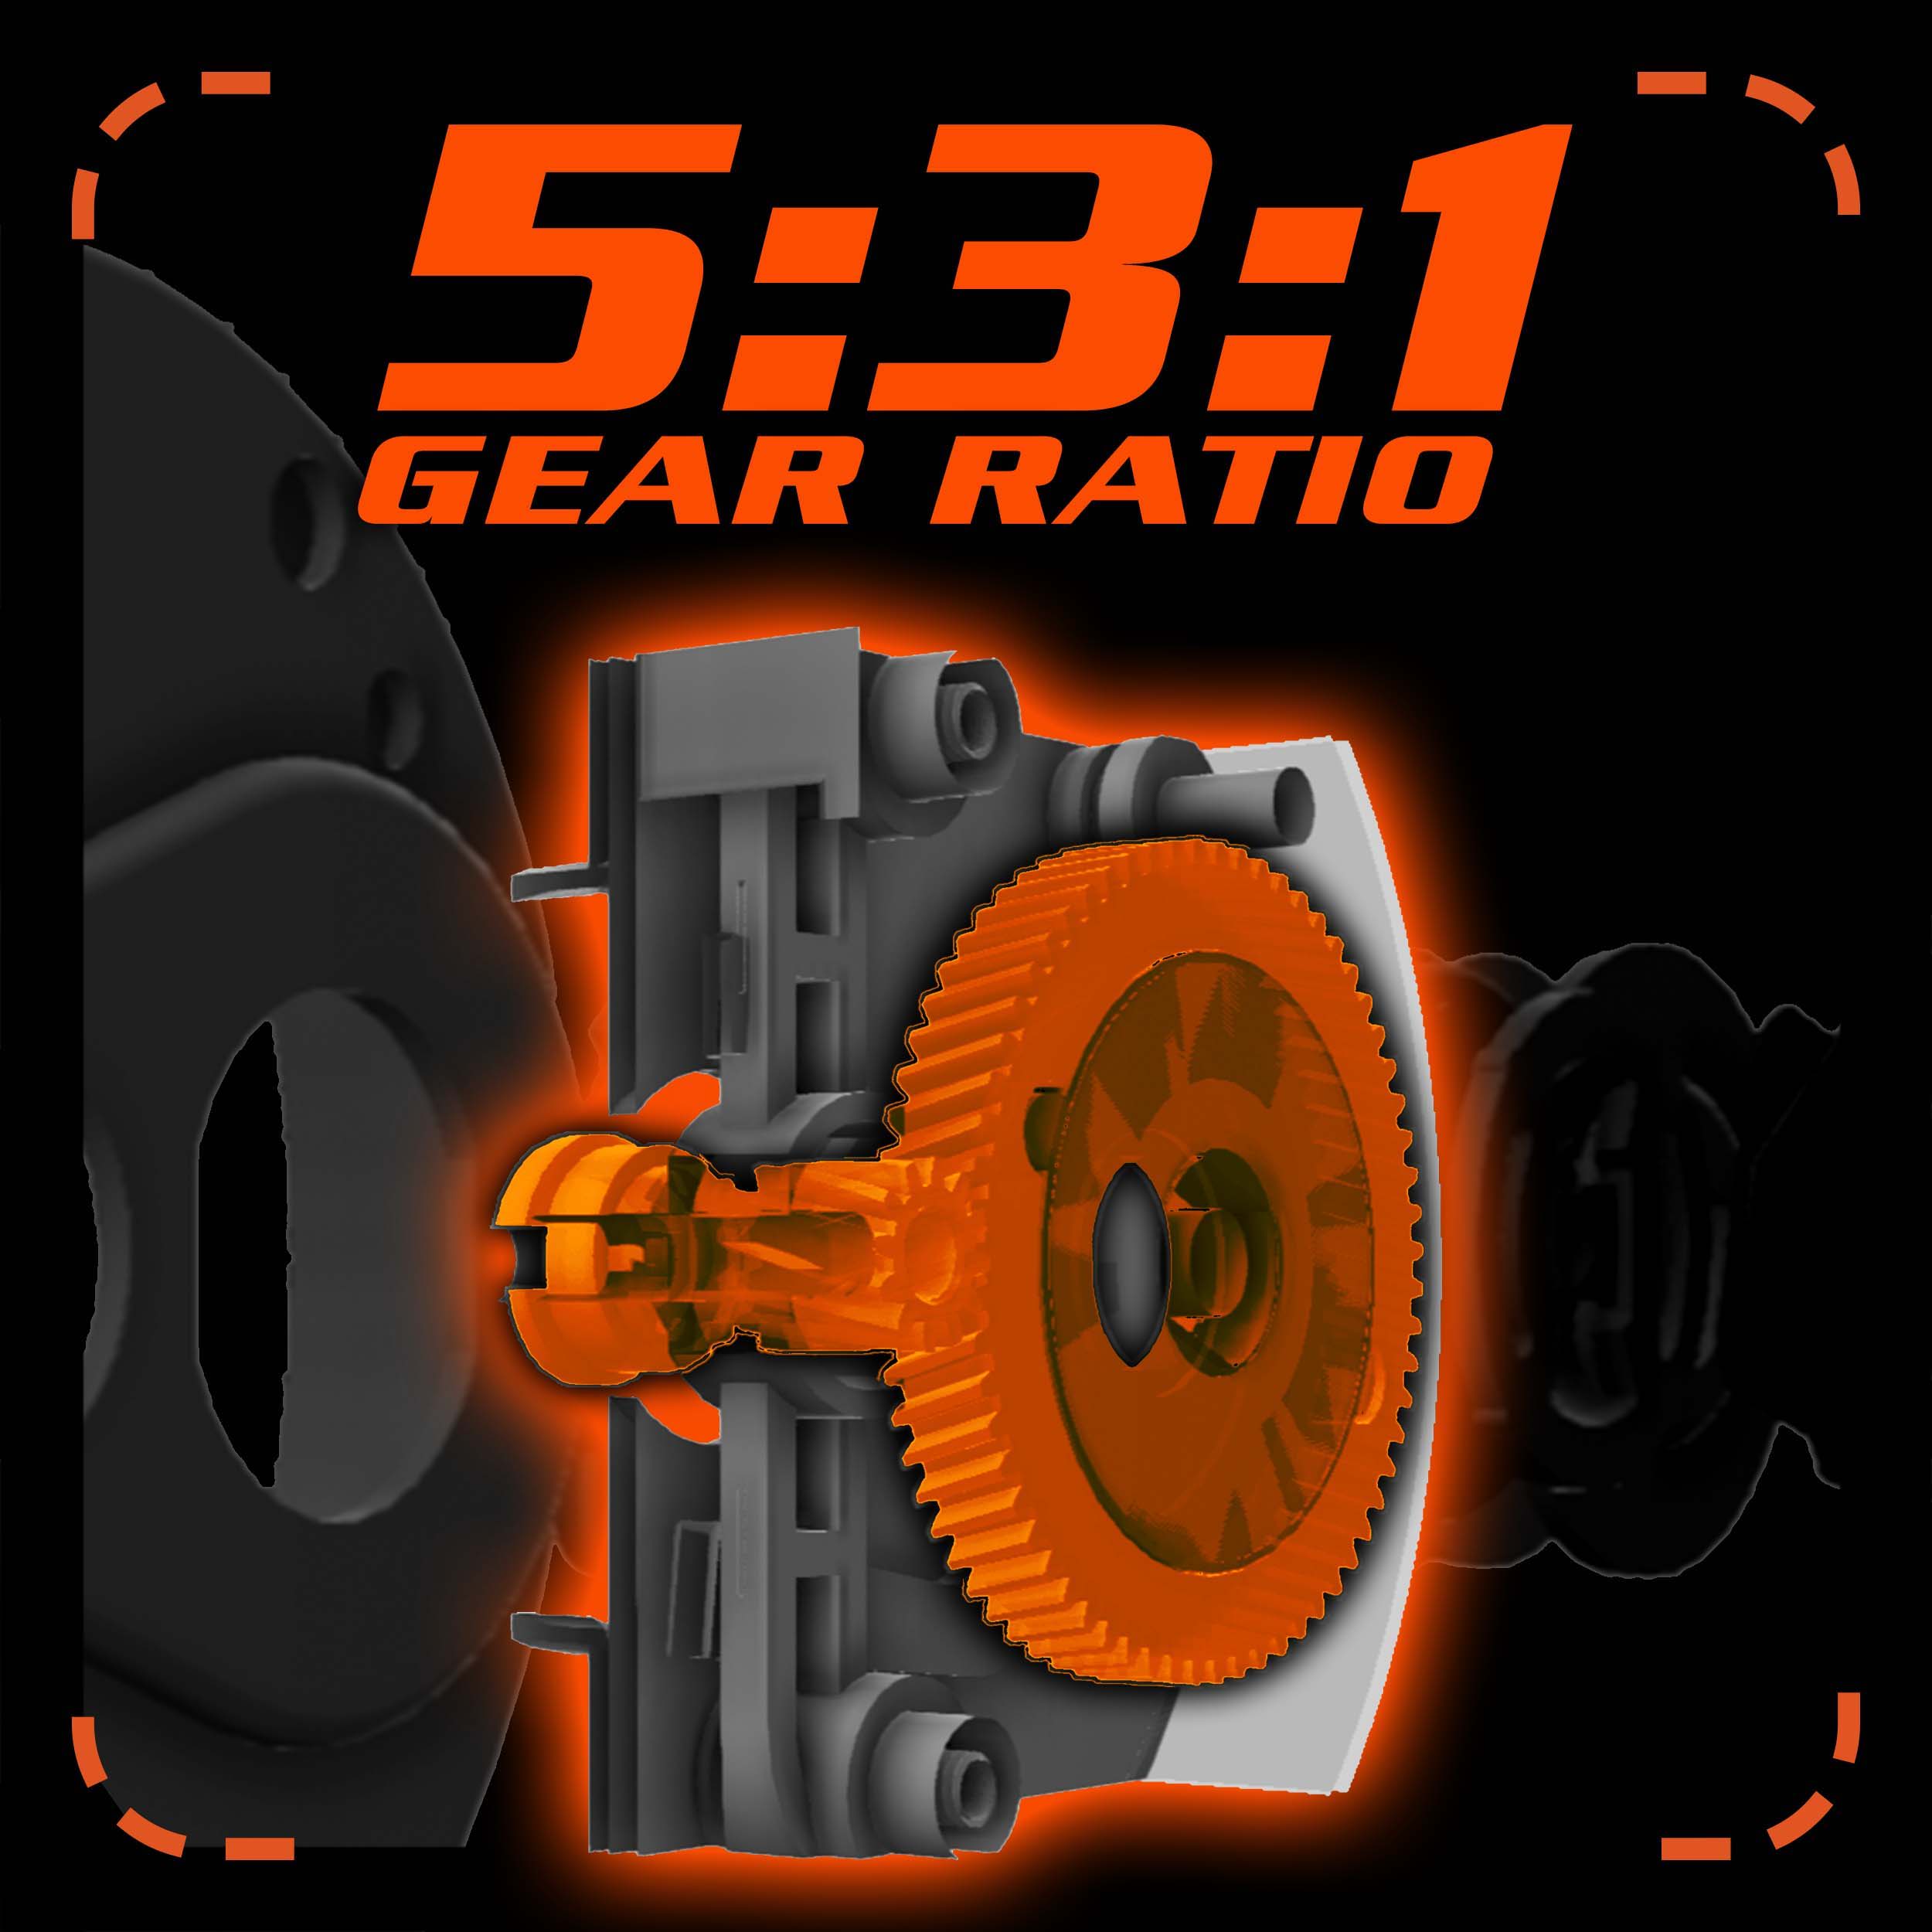 5:3:1 Gear Ratio